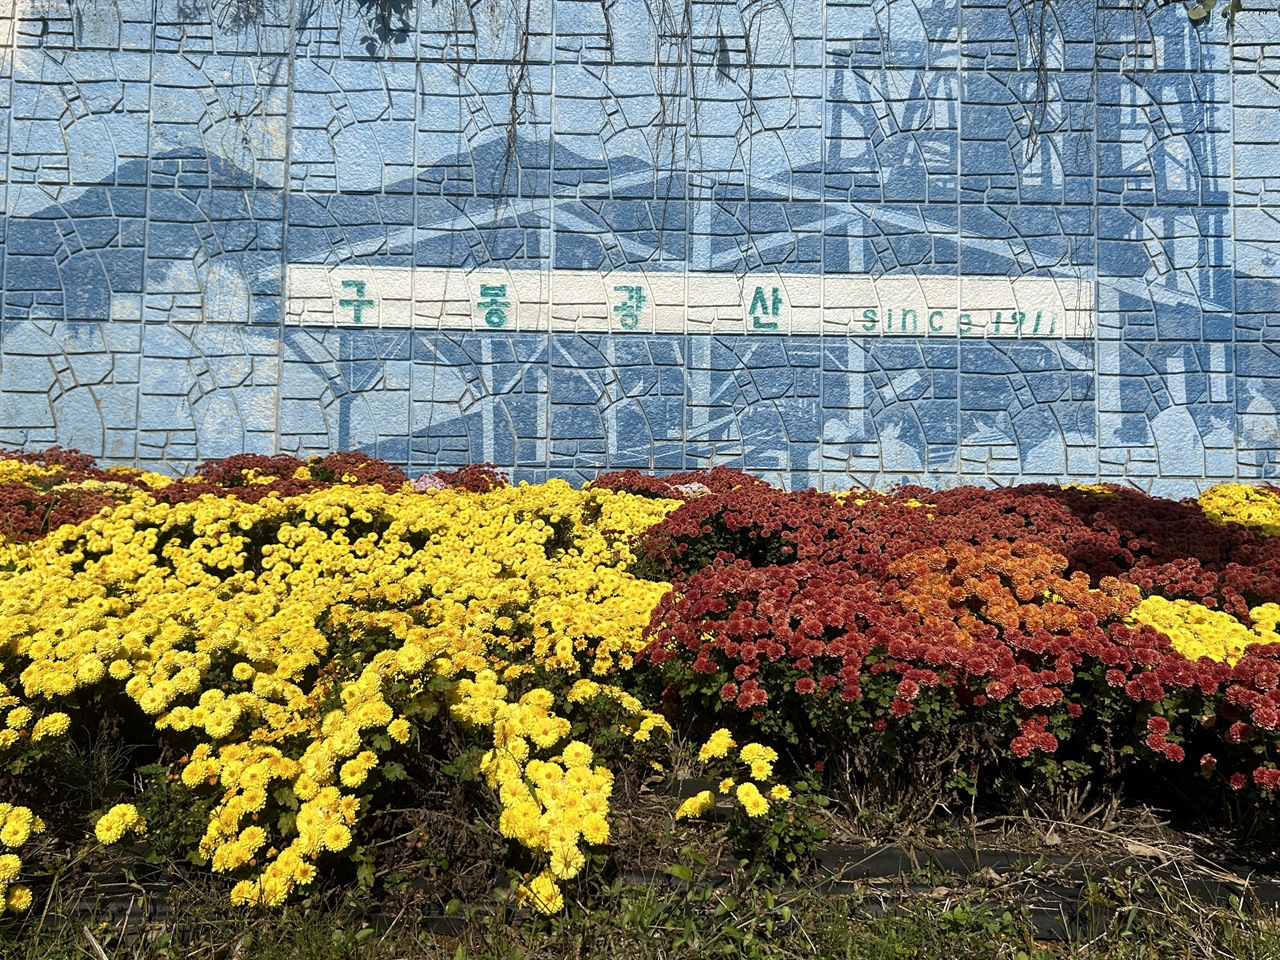 청양군 남양면 구룡3리 도로변의 백만송이 국화. 옹벽에는 지금은 폐광된 구봉광산의 옛모습을 볼 수 있는 벽화가 그려져 있다. 